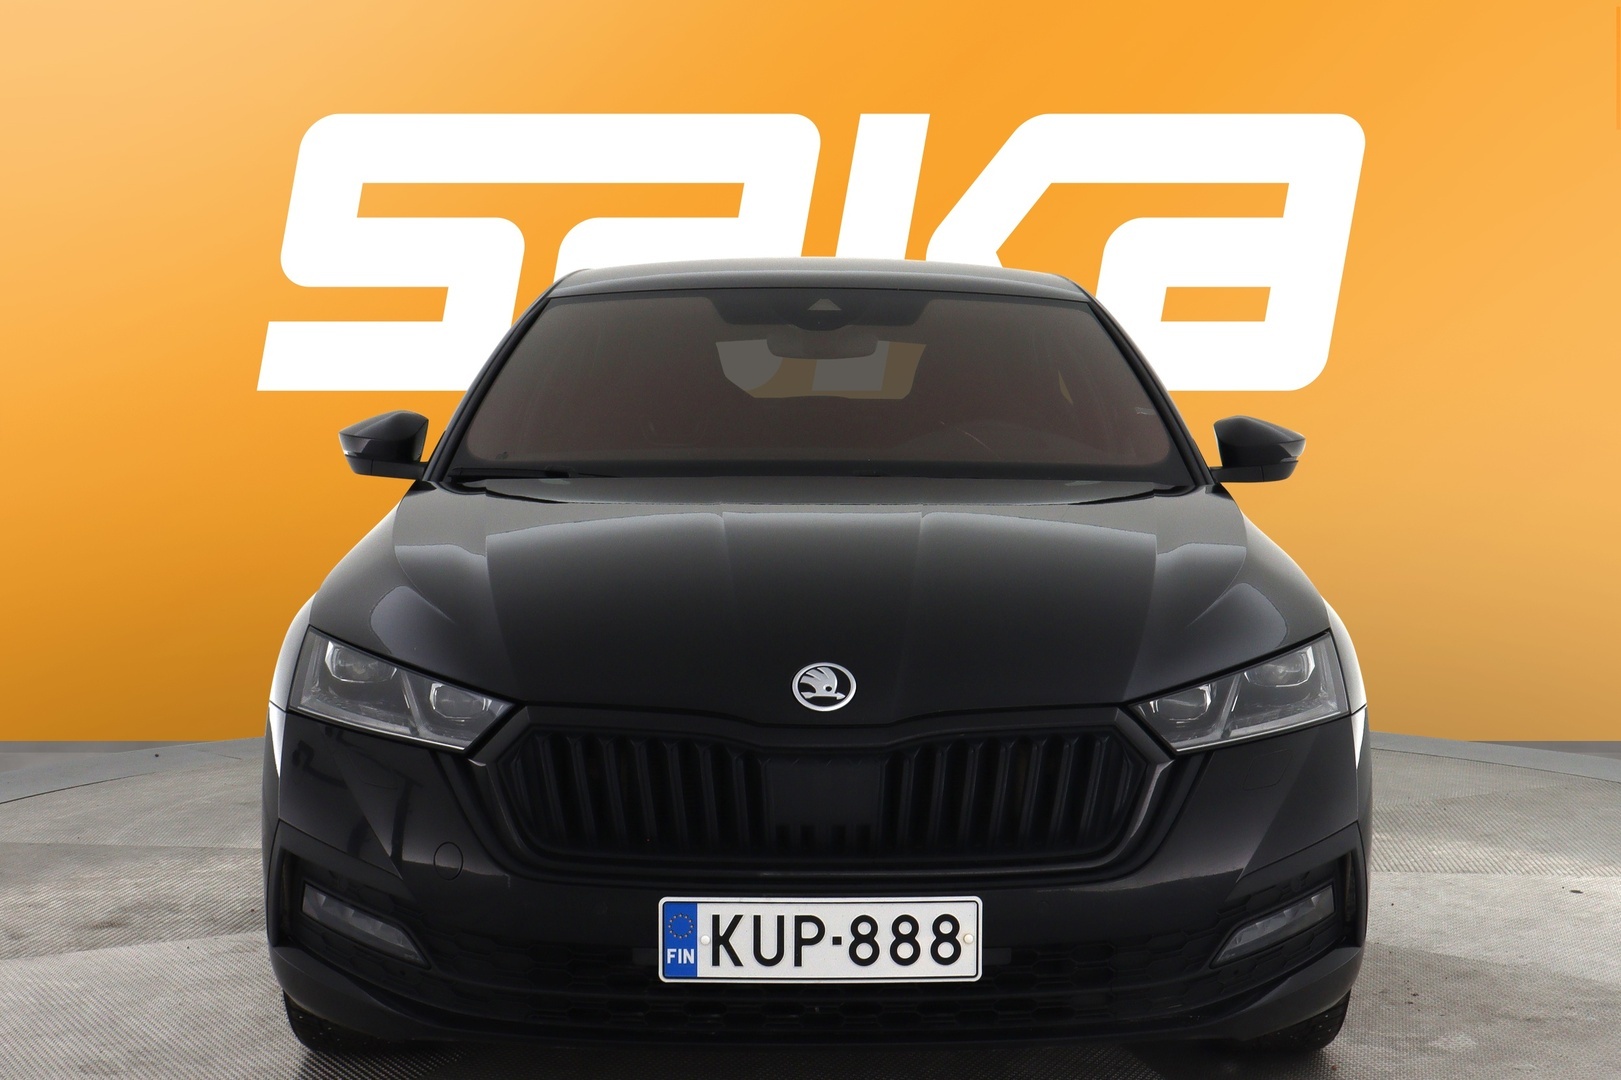 Musta Sedan, Skoda Octavia – KUP-888